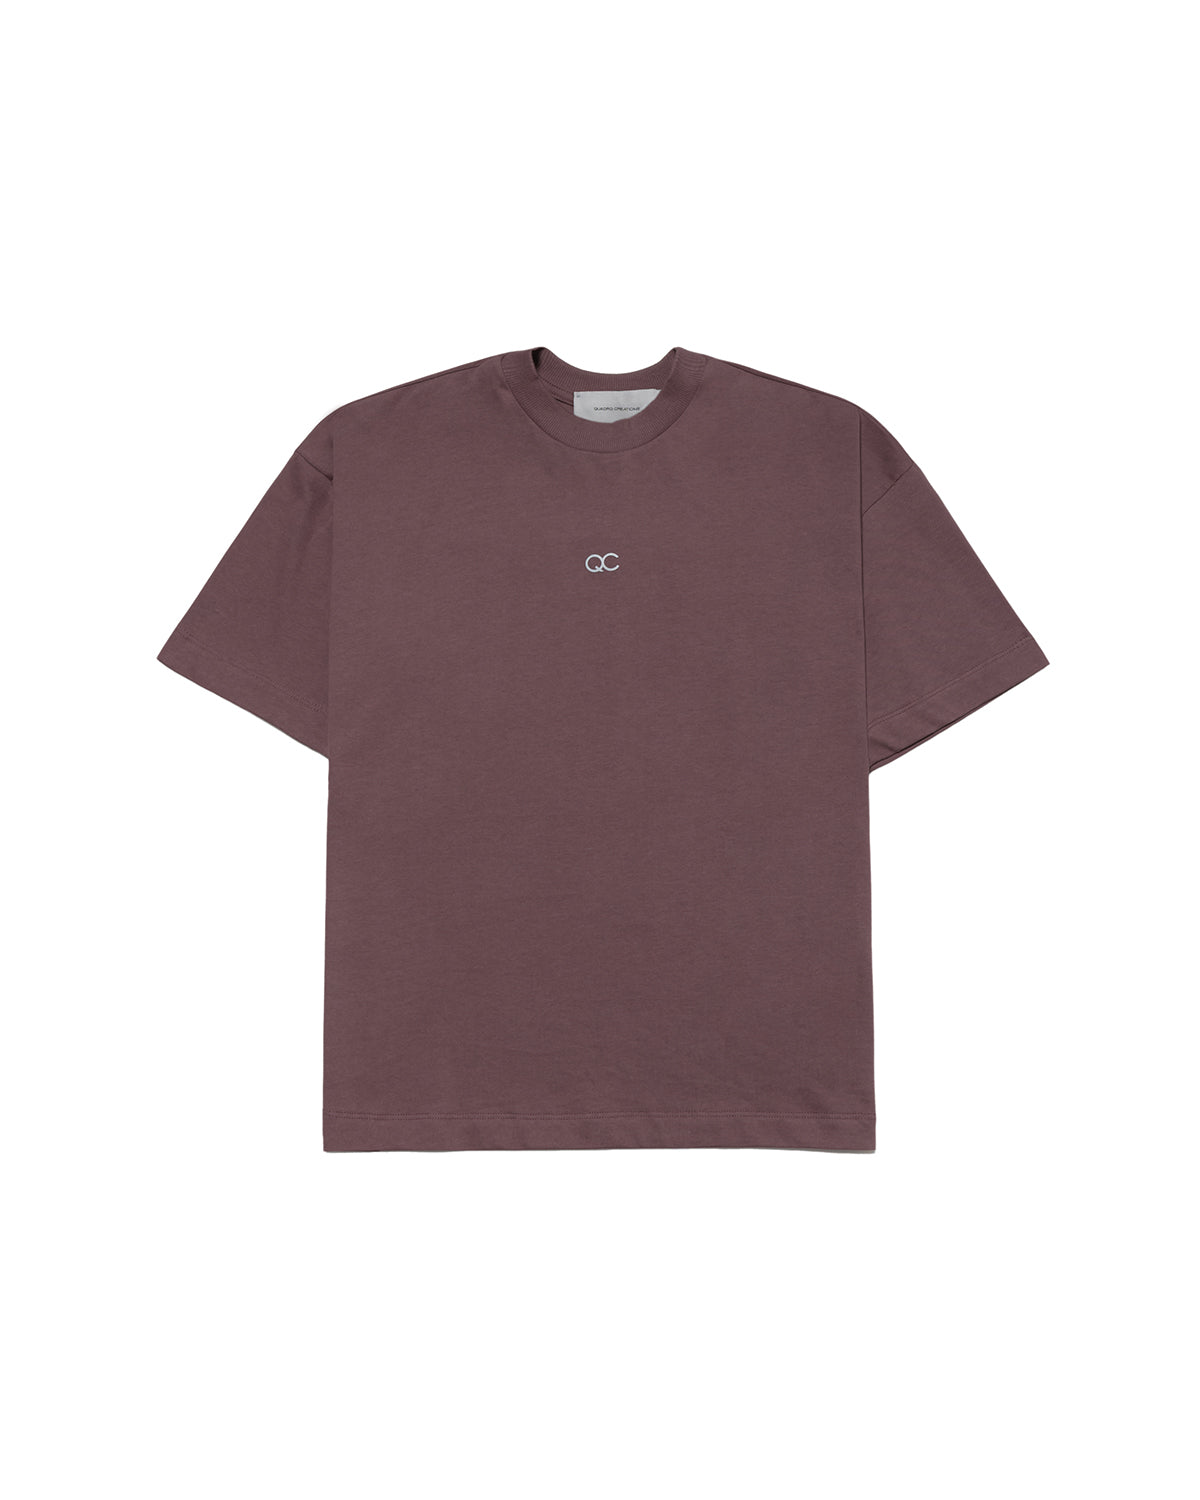 Ficino Brown T-Shirt